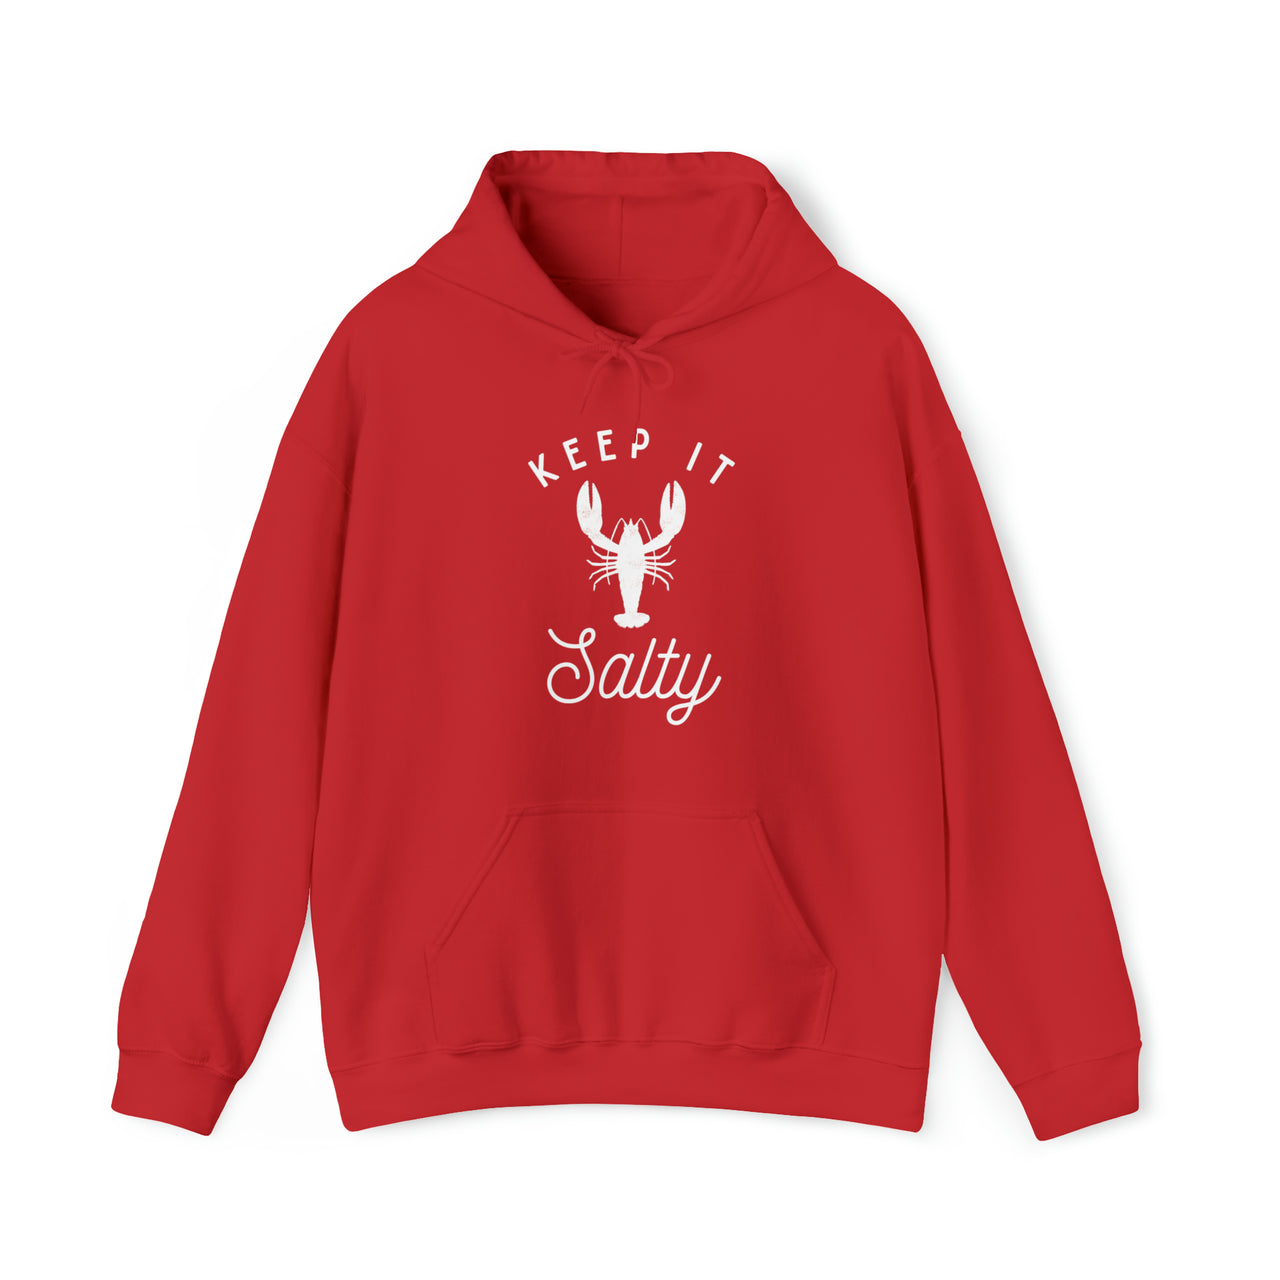 Keep It Salty Heavy Blend Hooded Sweatshirt, Unisex Red